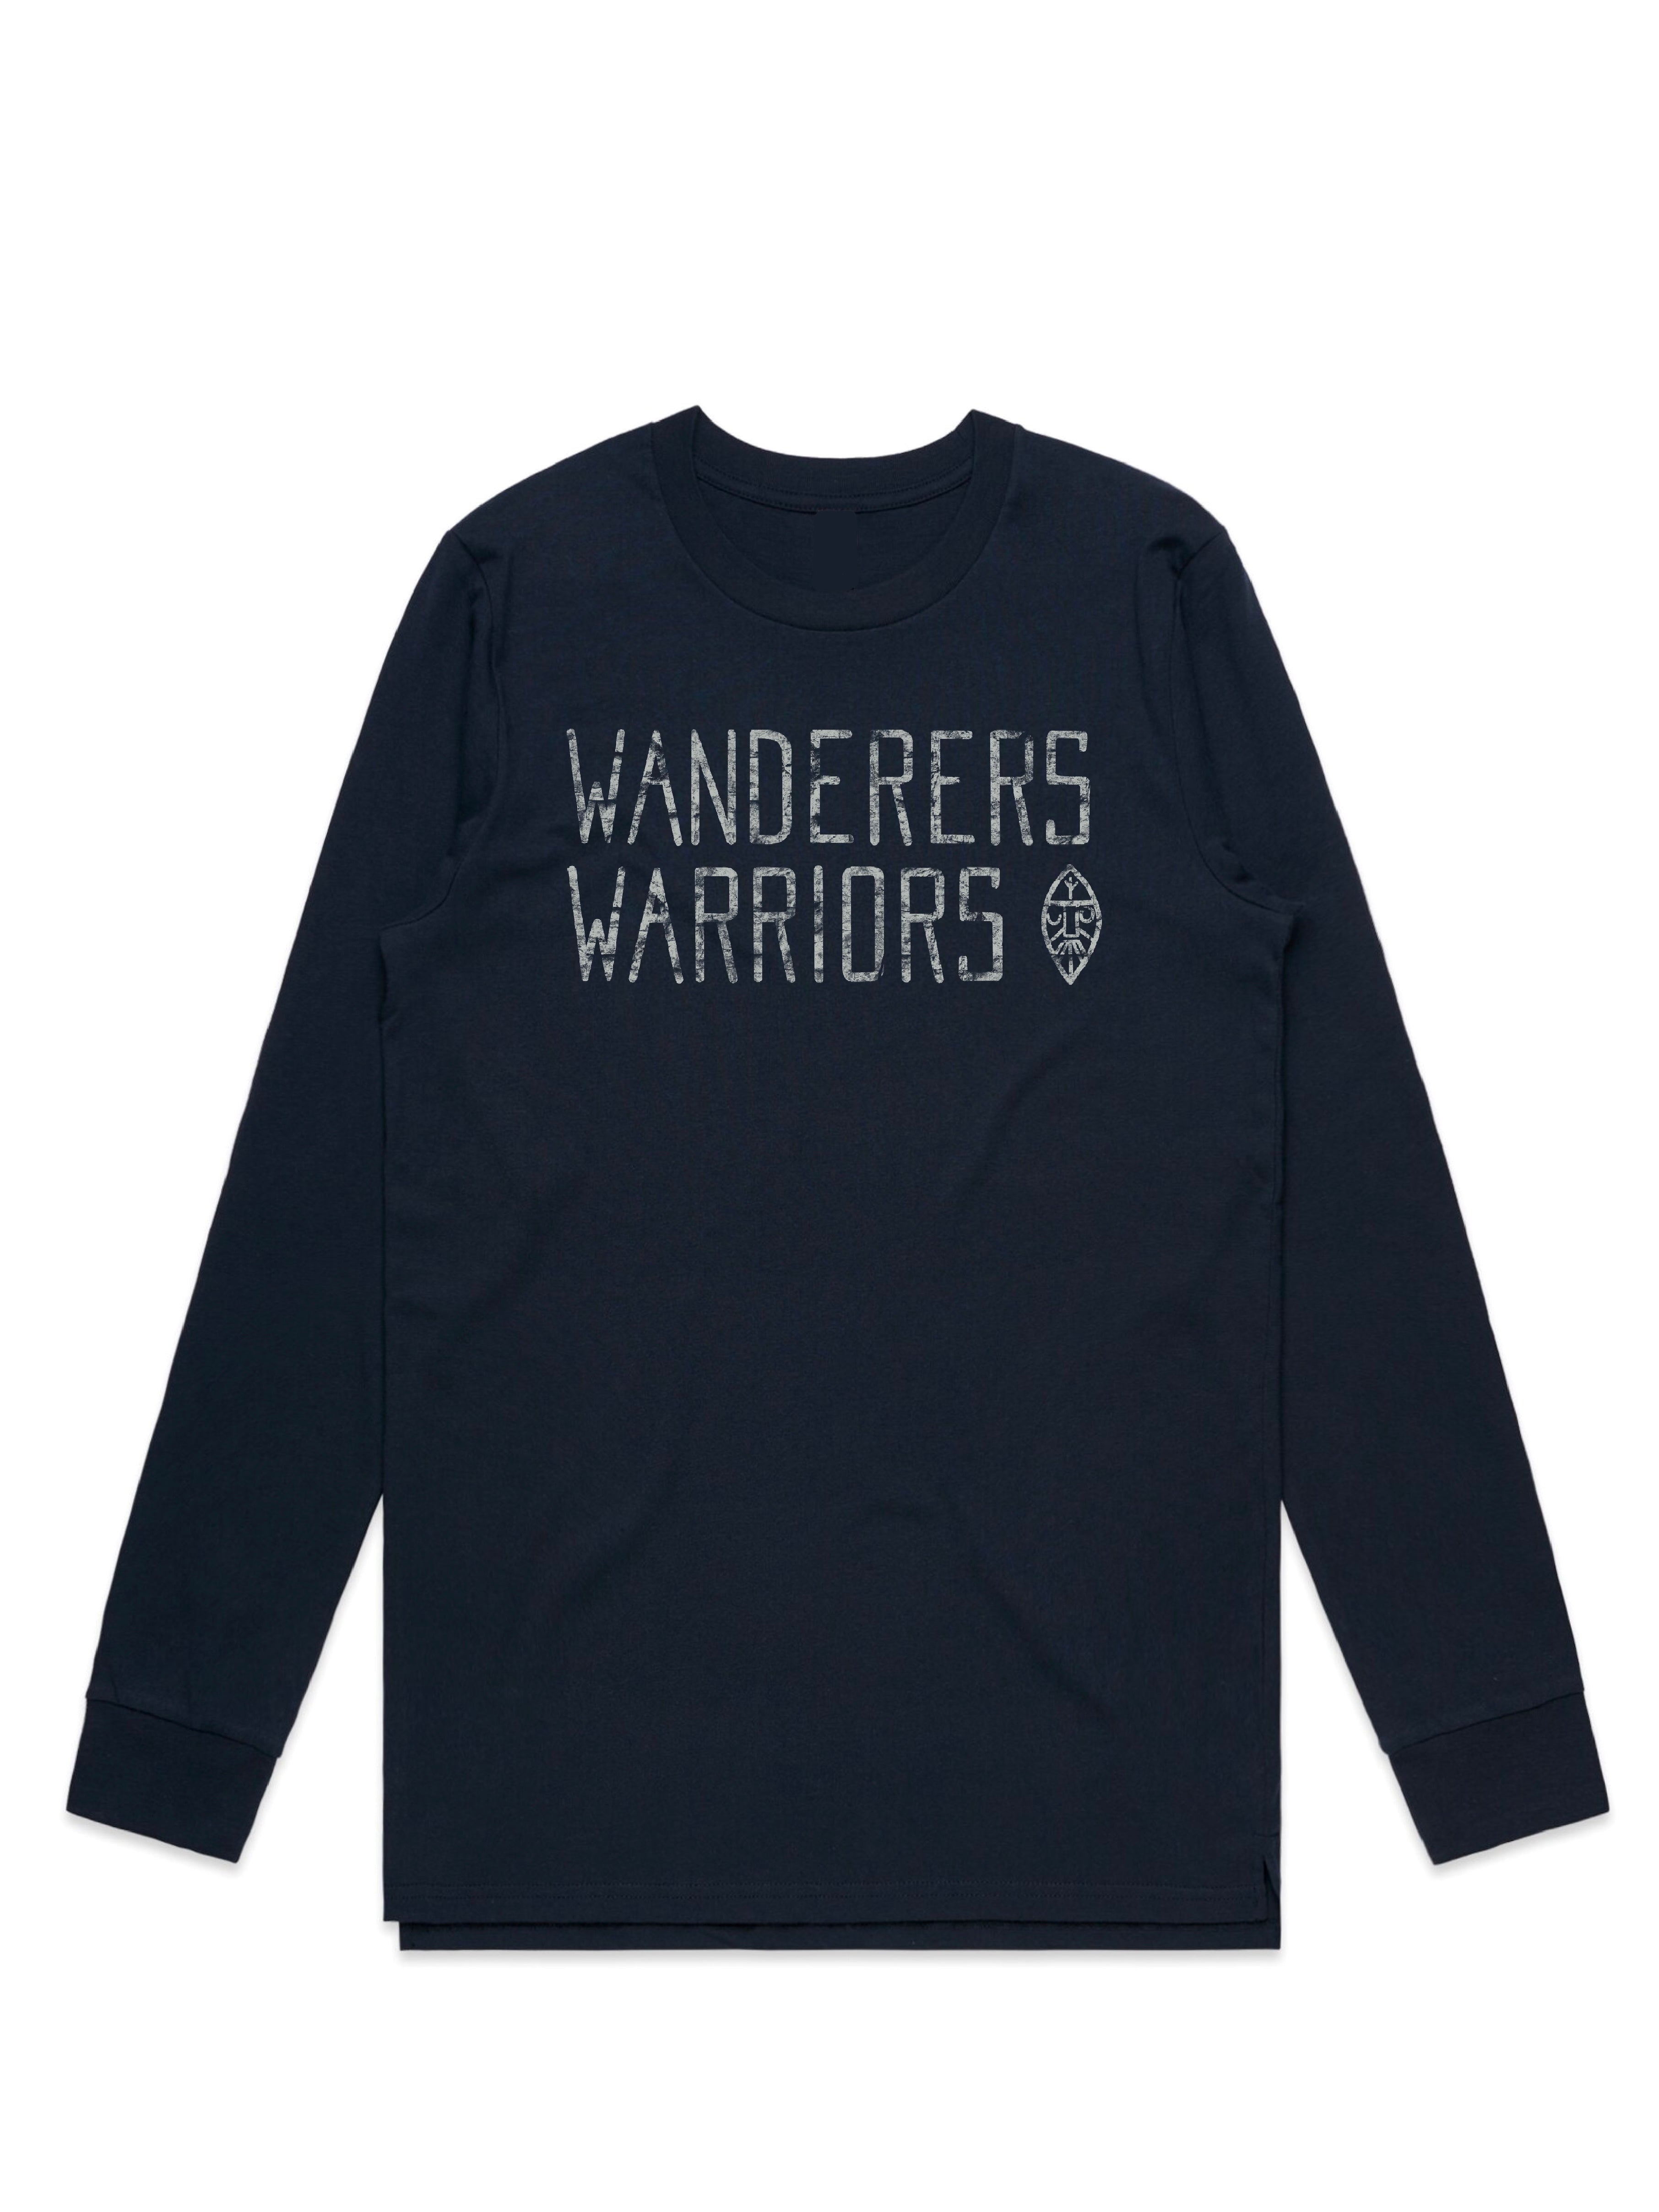 Langr: Wanderers & Warriors